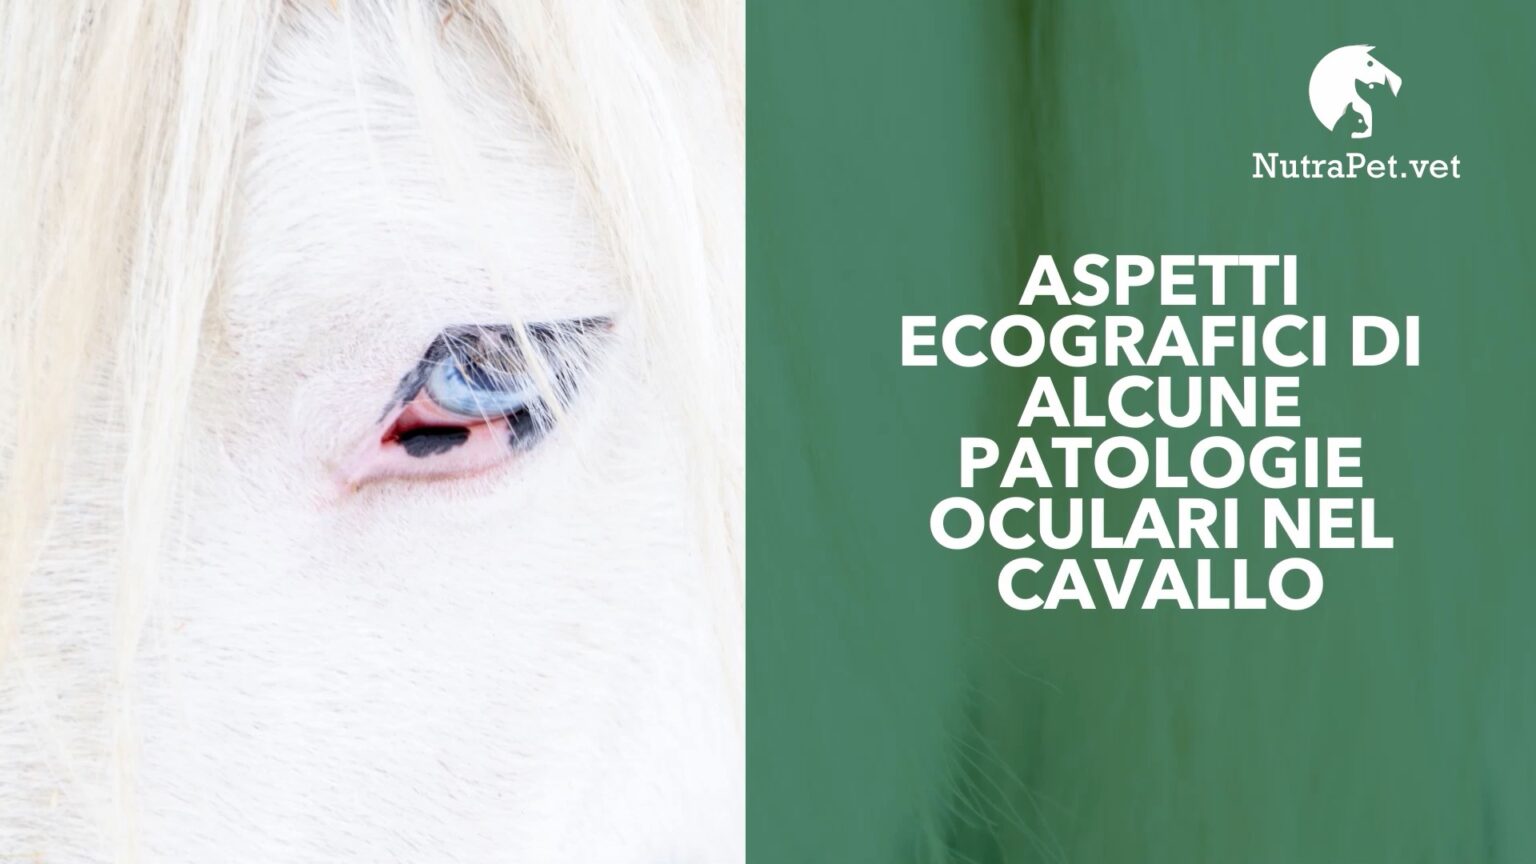 R_Gialletti - Aspetti ecografici patologie oculari nel cavallo